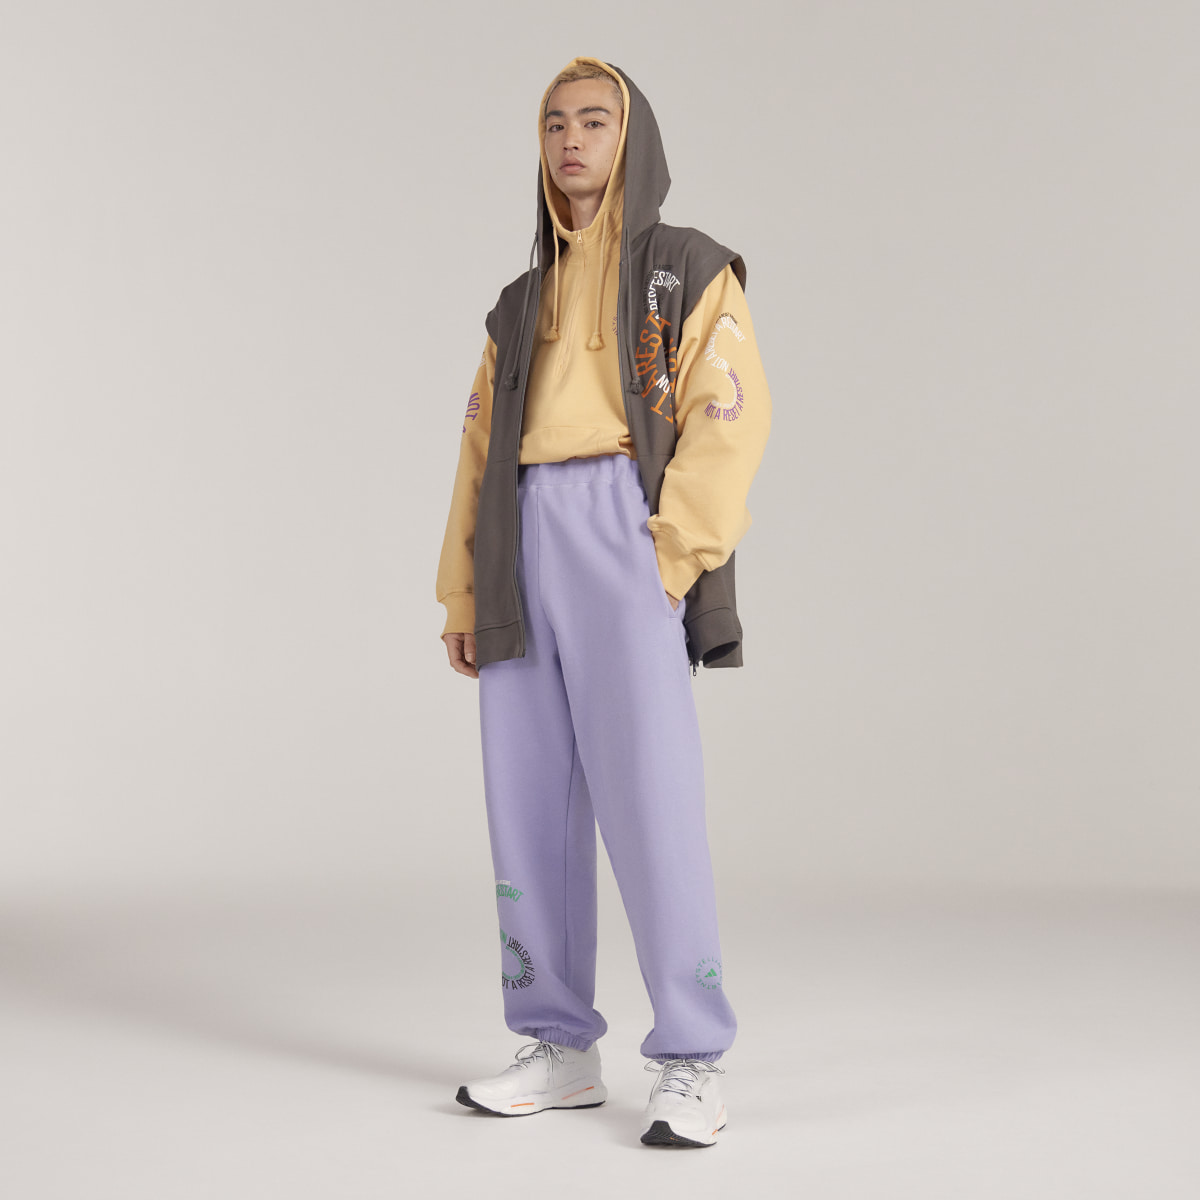 Adidas by Stella McCartney Pull On - Gender Neutral. 9